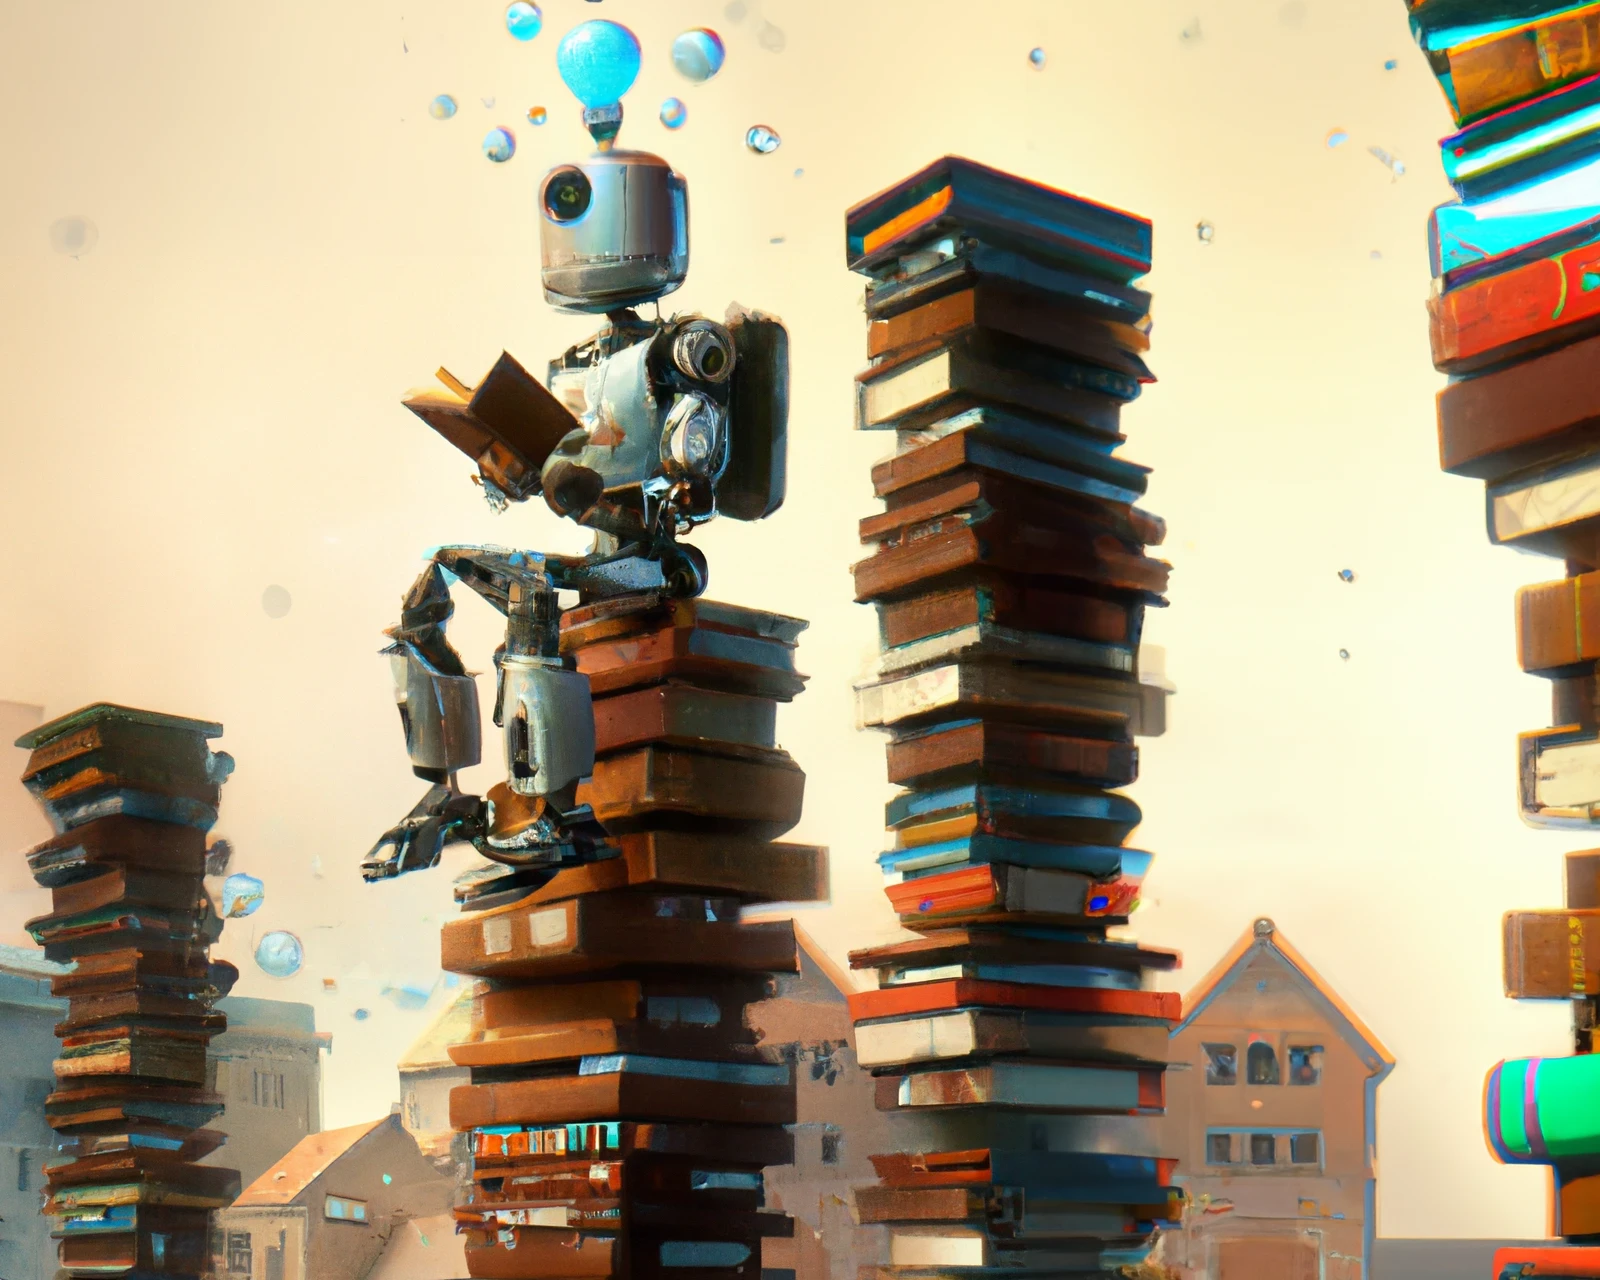 Arte digital robot encima de una torre de libros.